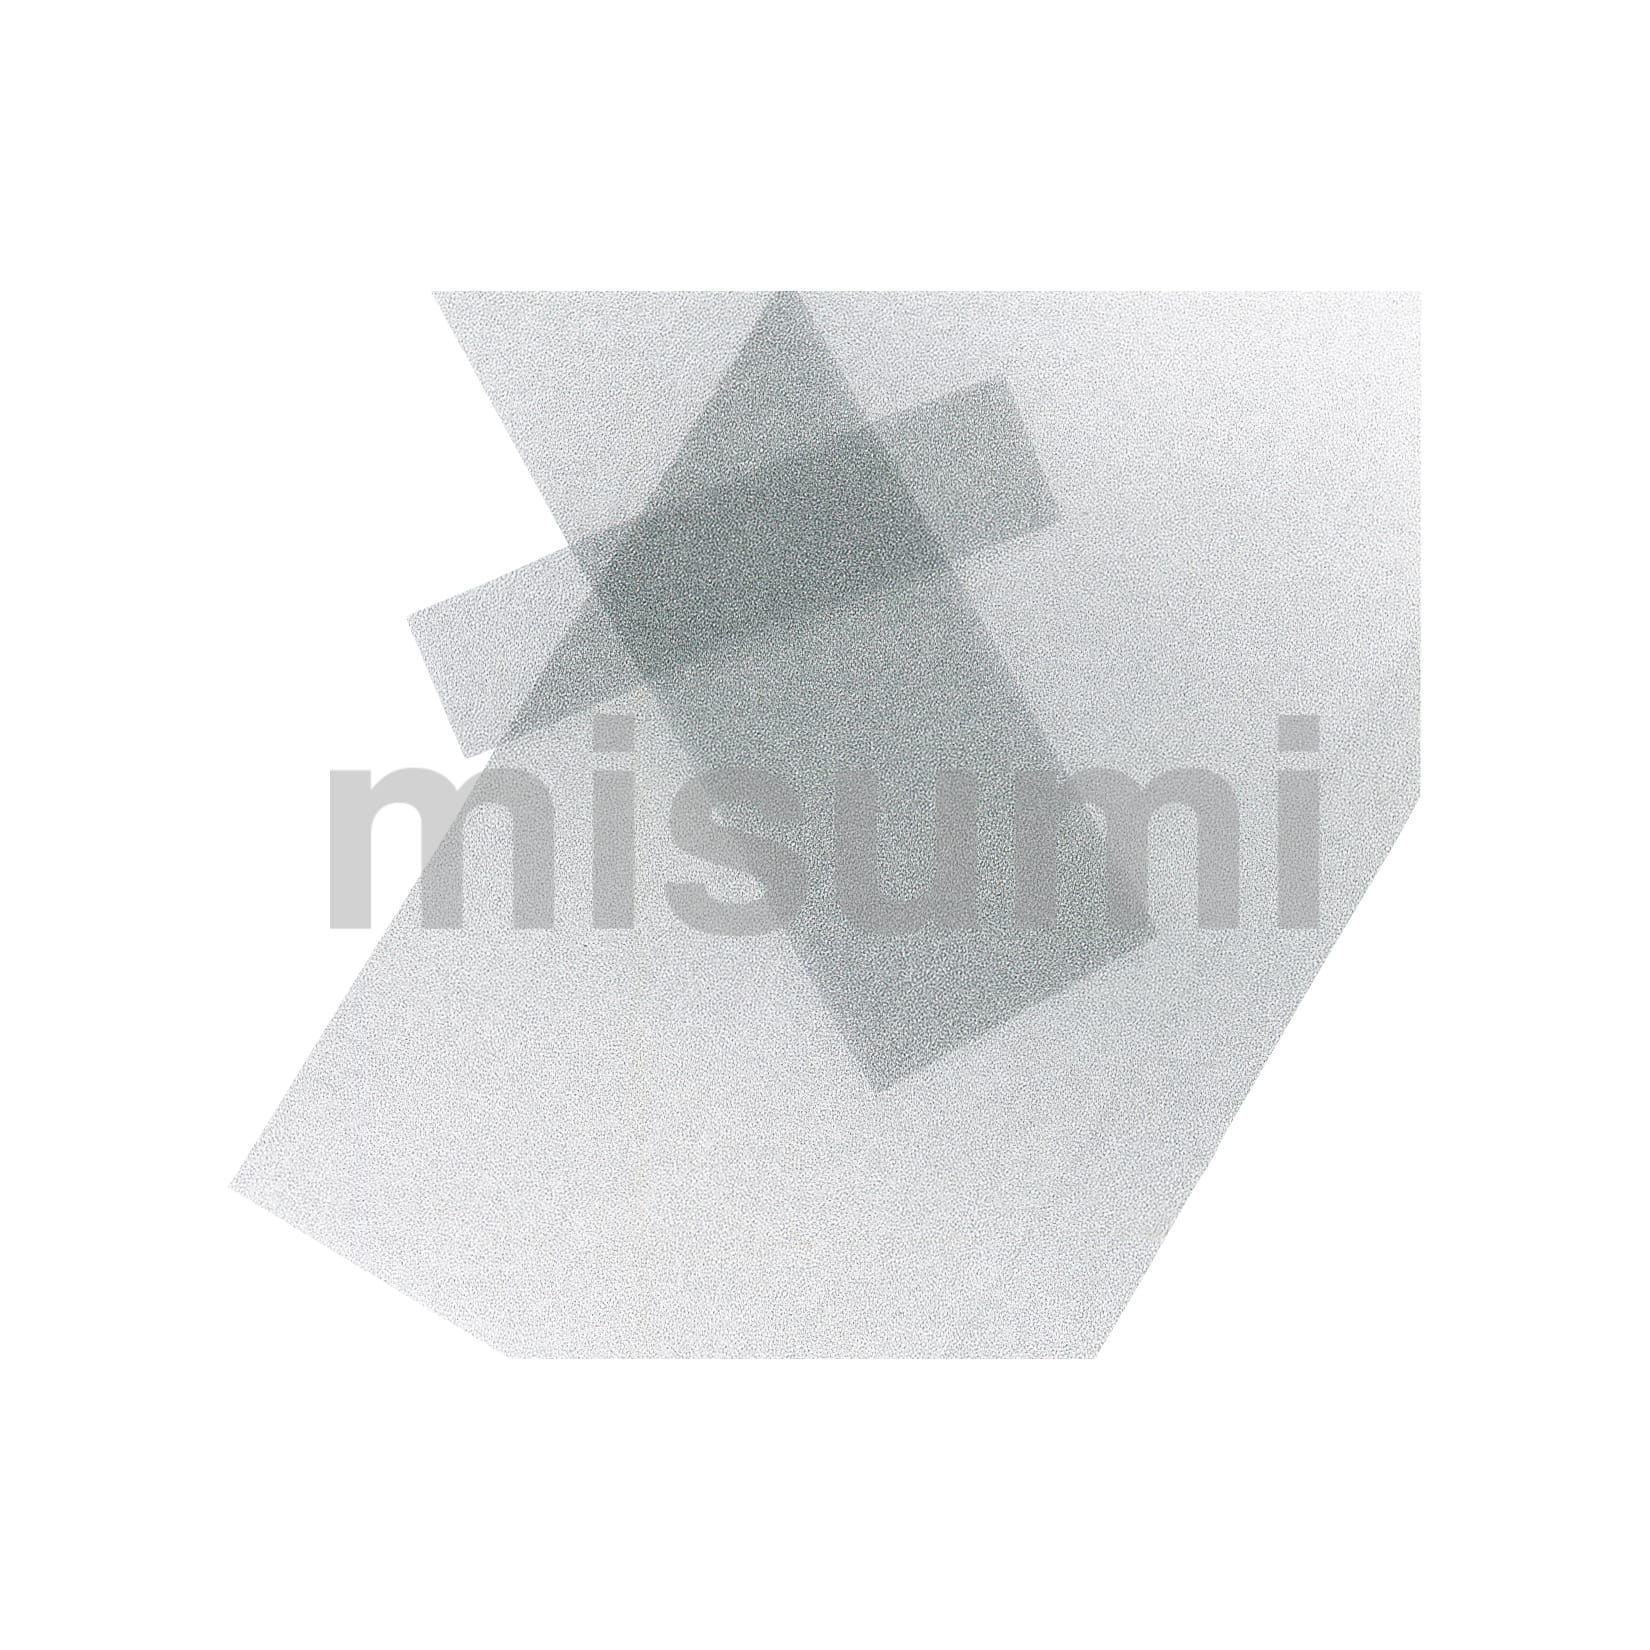 FLM8 ファンモーターオプション フィルター オリエンタルモーター MISUMI(ミスミ)